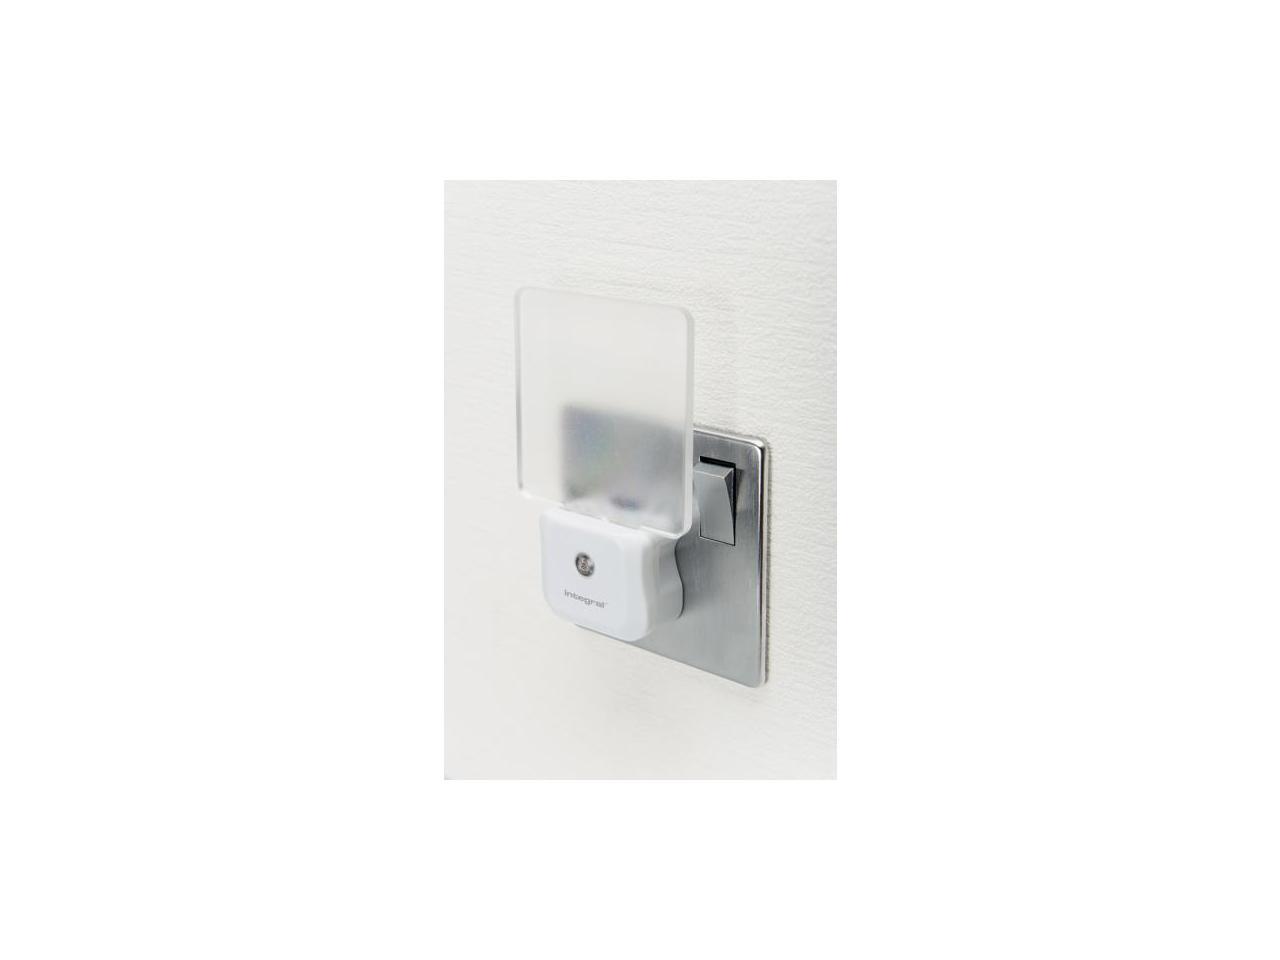 Integral Auto-Sensor LED Night Light (UK 3-pin plug)